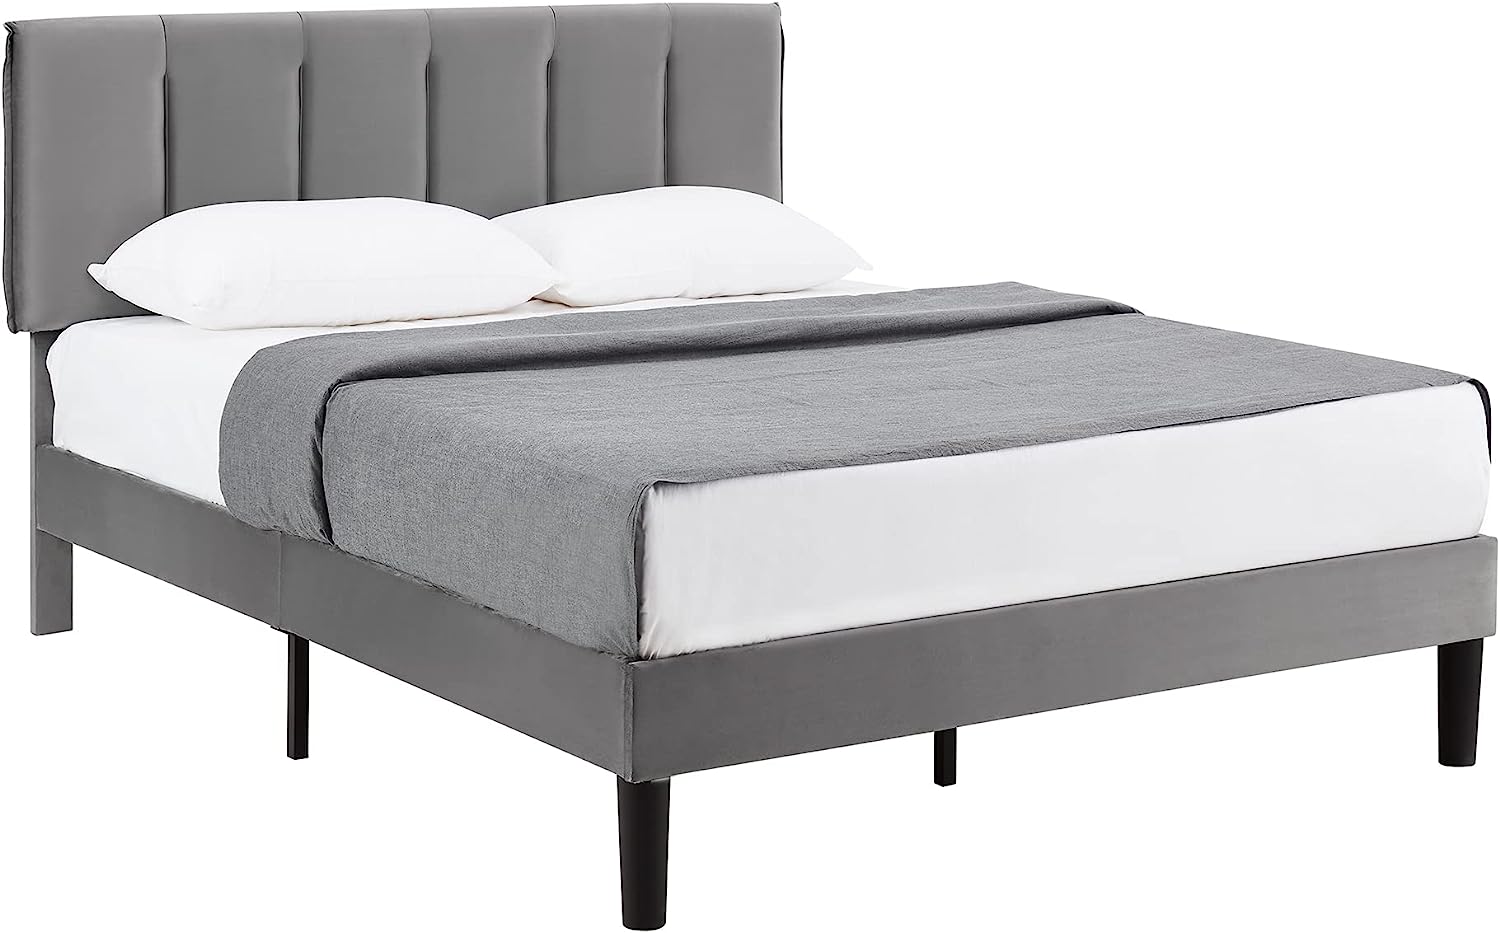 VECELO Grey Bed Frame, Modern Upholstered Platform Bedframe, Adjustable Headboard, Twin/Full/Queen size